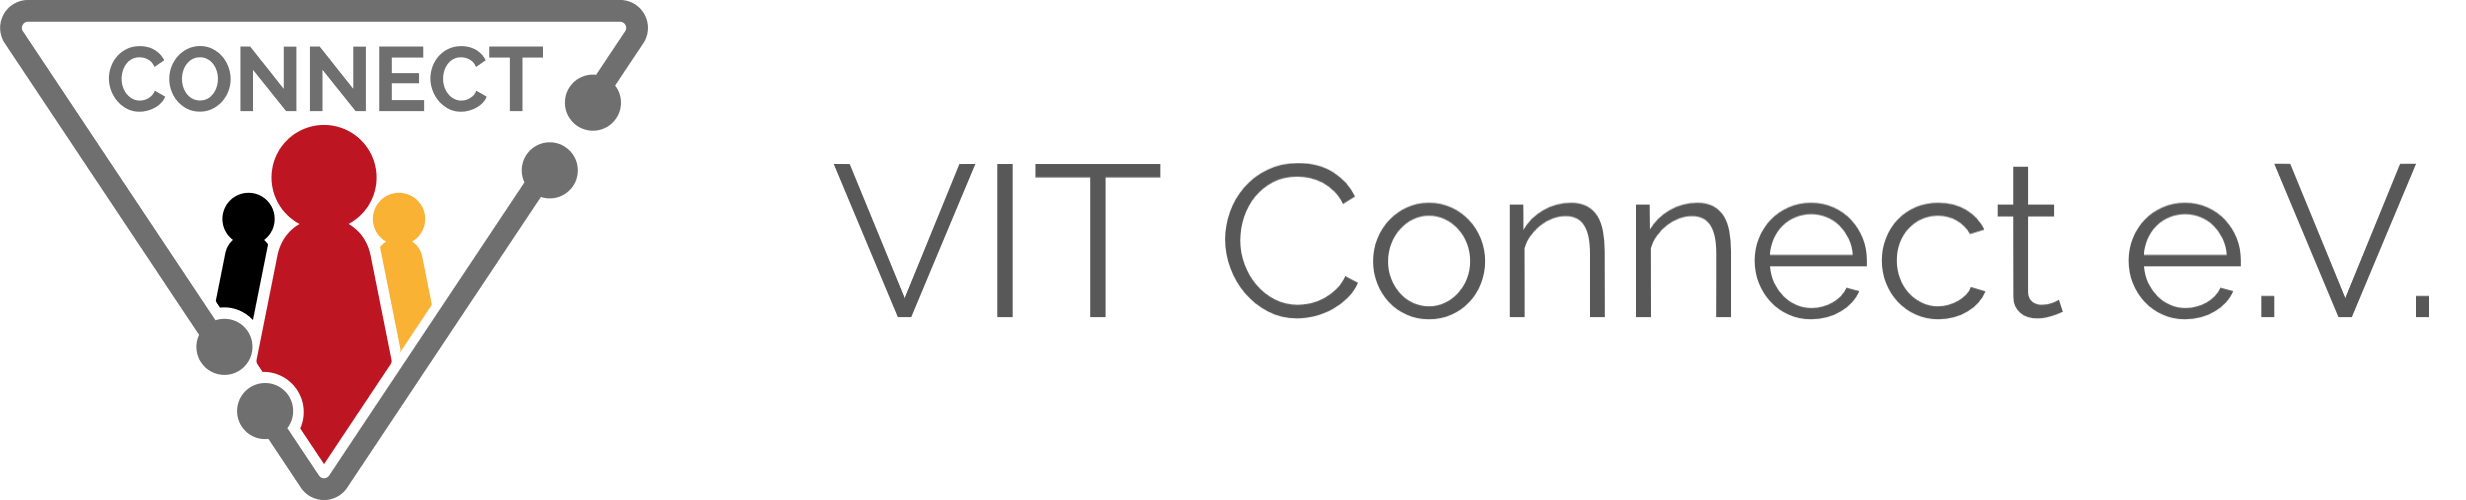 VIT Connect